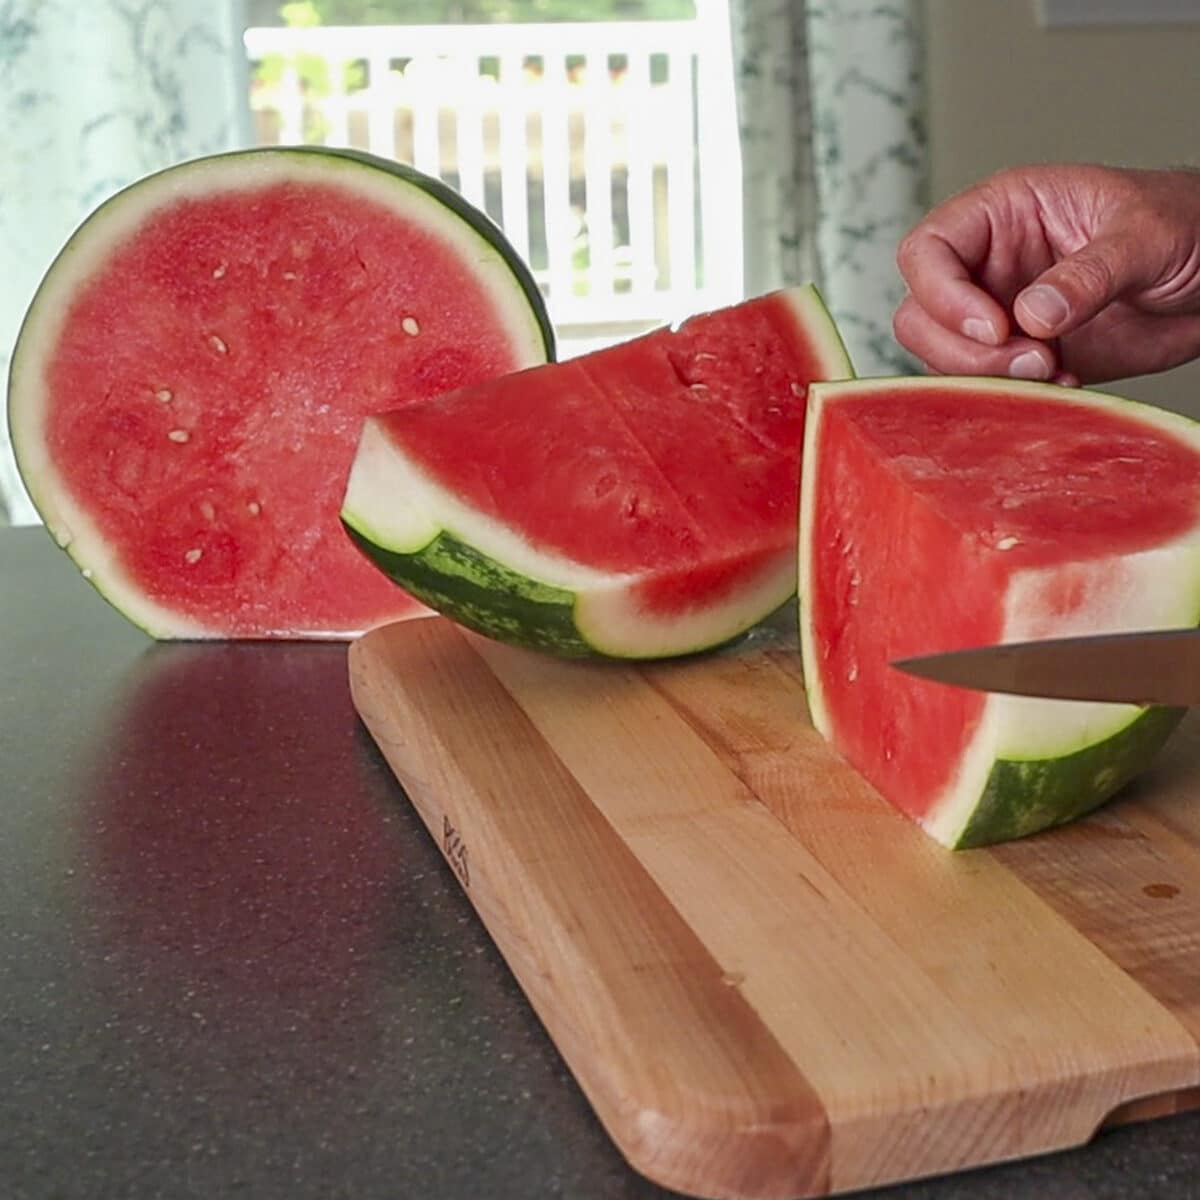 watermelon being cut on a cutting board